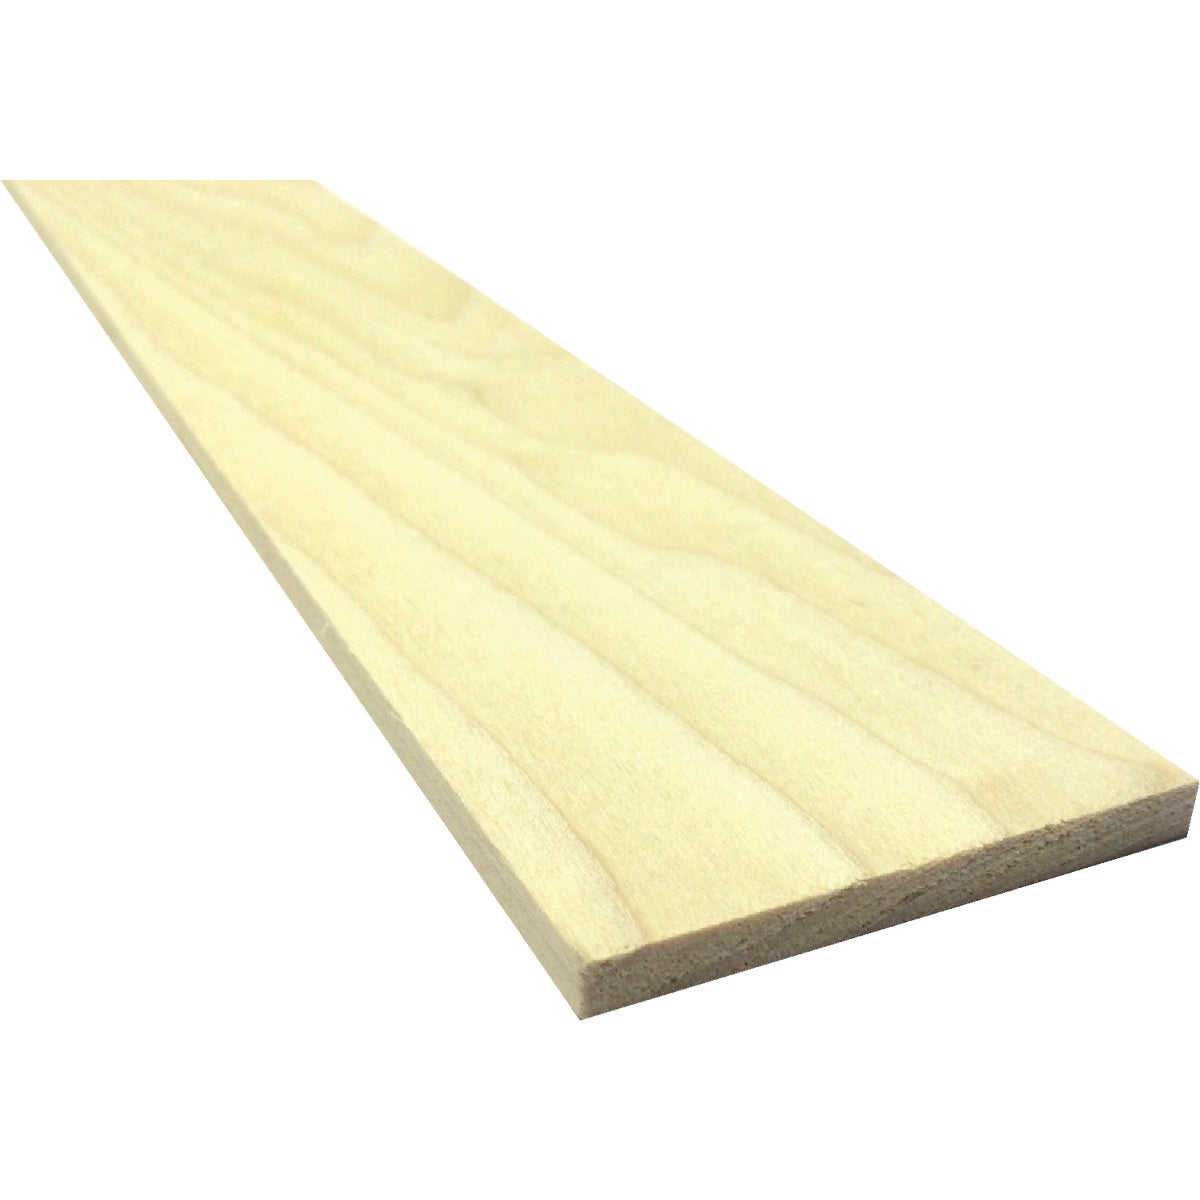 Waddell 1/4 In. x 4 In. x 2 Ft. Poplar Wood Board